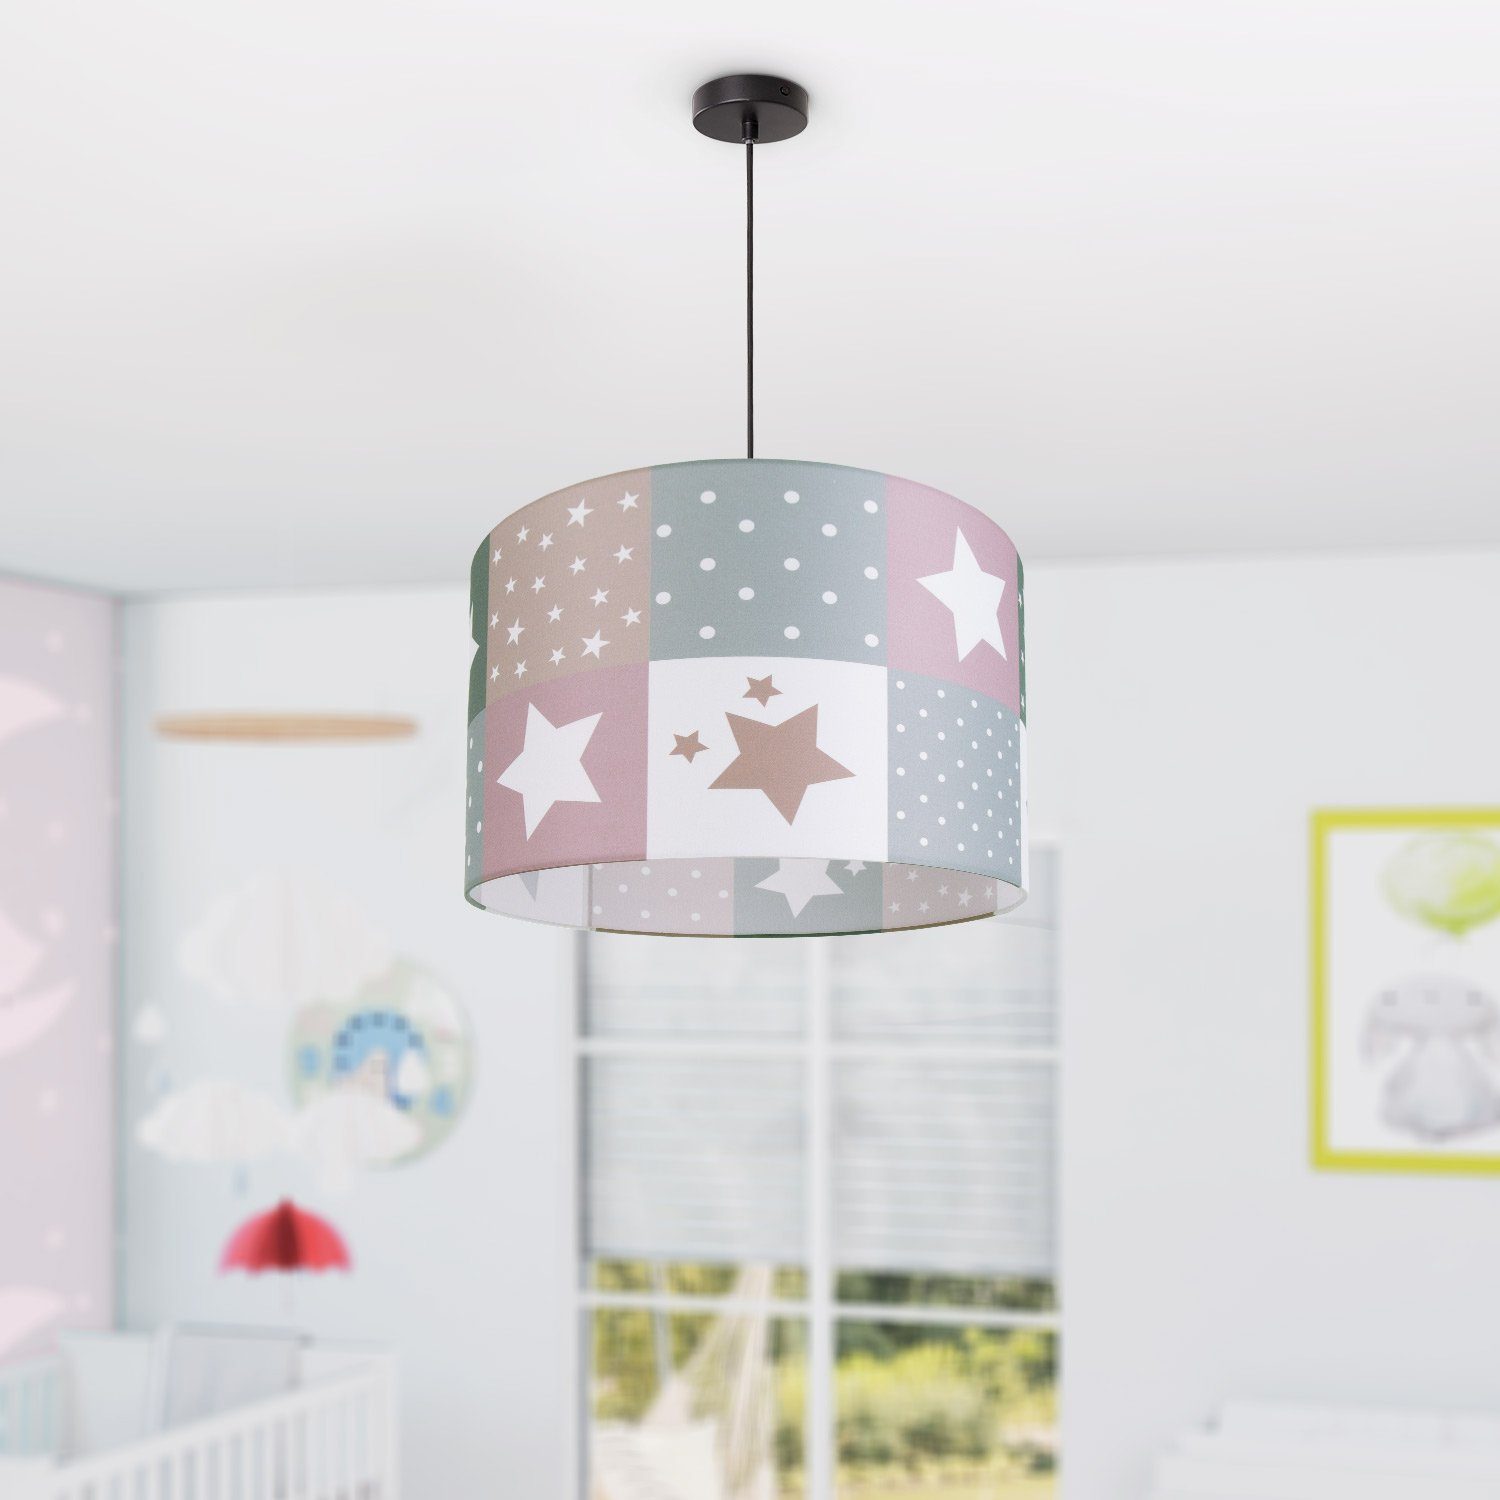 Kinderzimmer E27 Deckenlampe ohne Home Paco Lampe 345, Leuchtmittel, Cosmo LED Pendelleuchte Kinderlampe Motiv Sternen